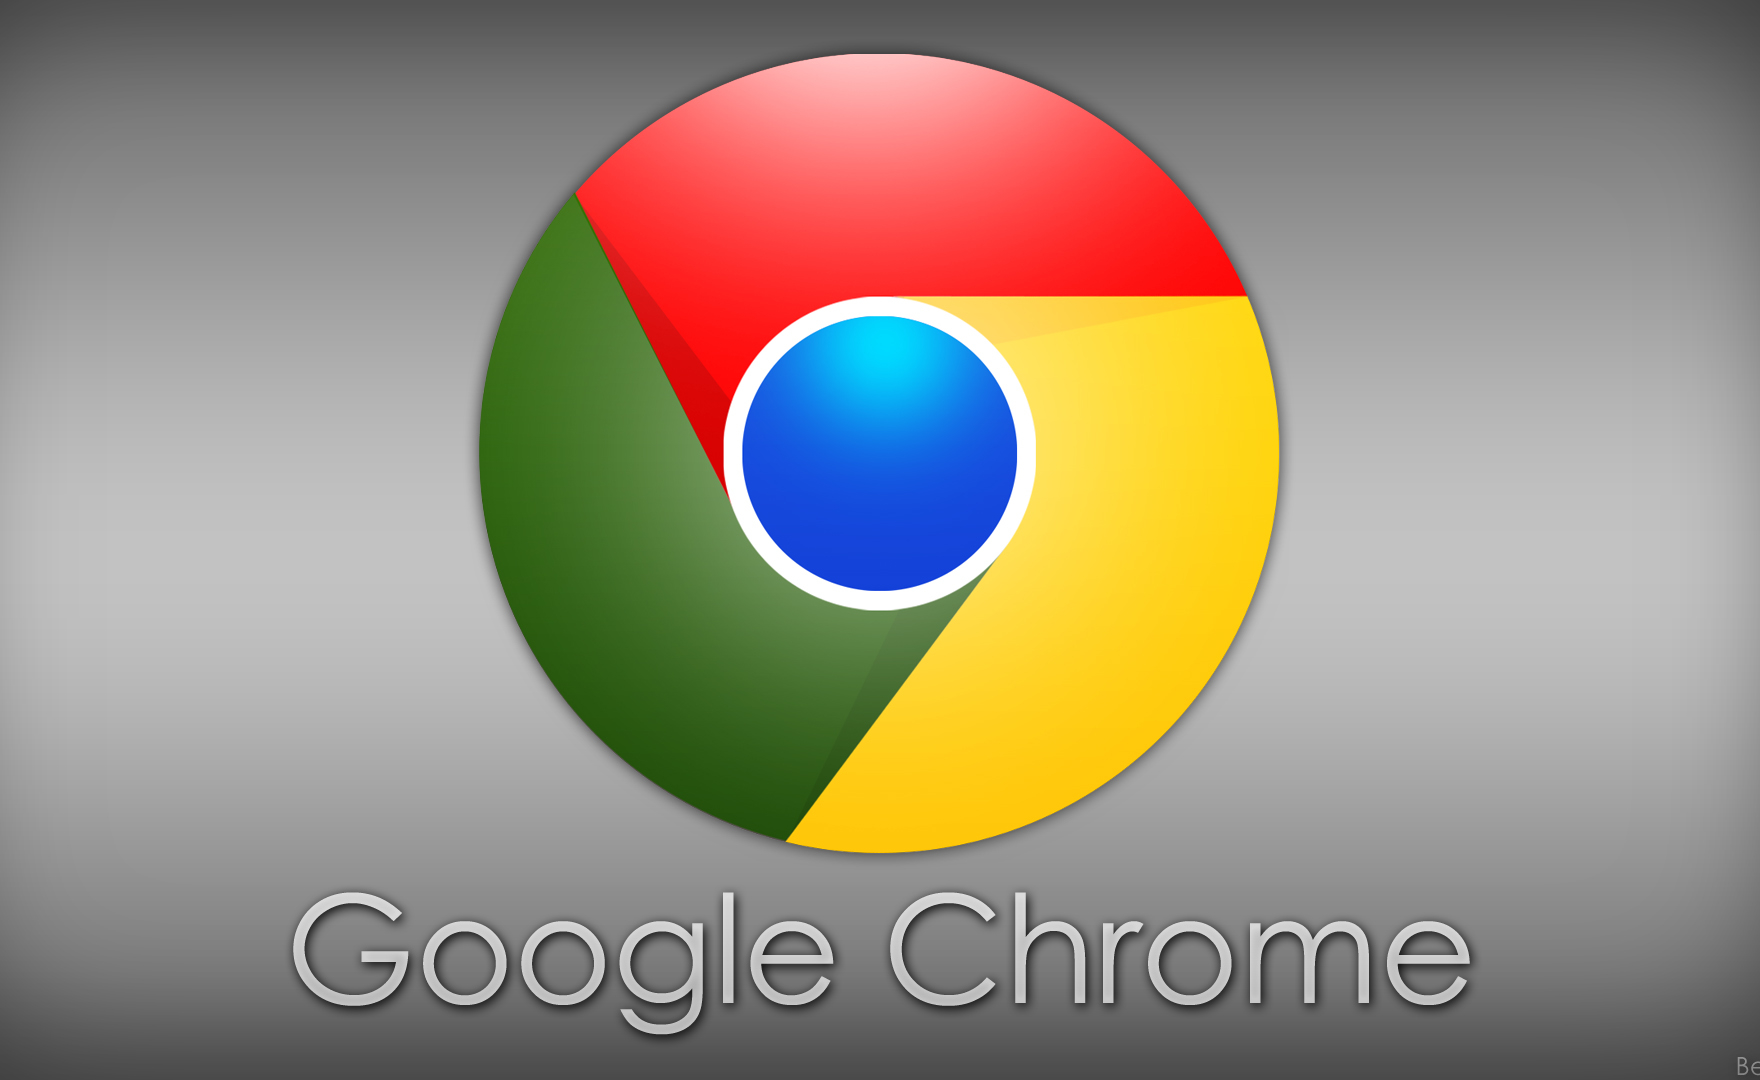 Google Chrome dichiara guerra ai cookie di terze parti. Addio entro 2 anni